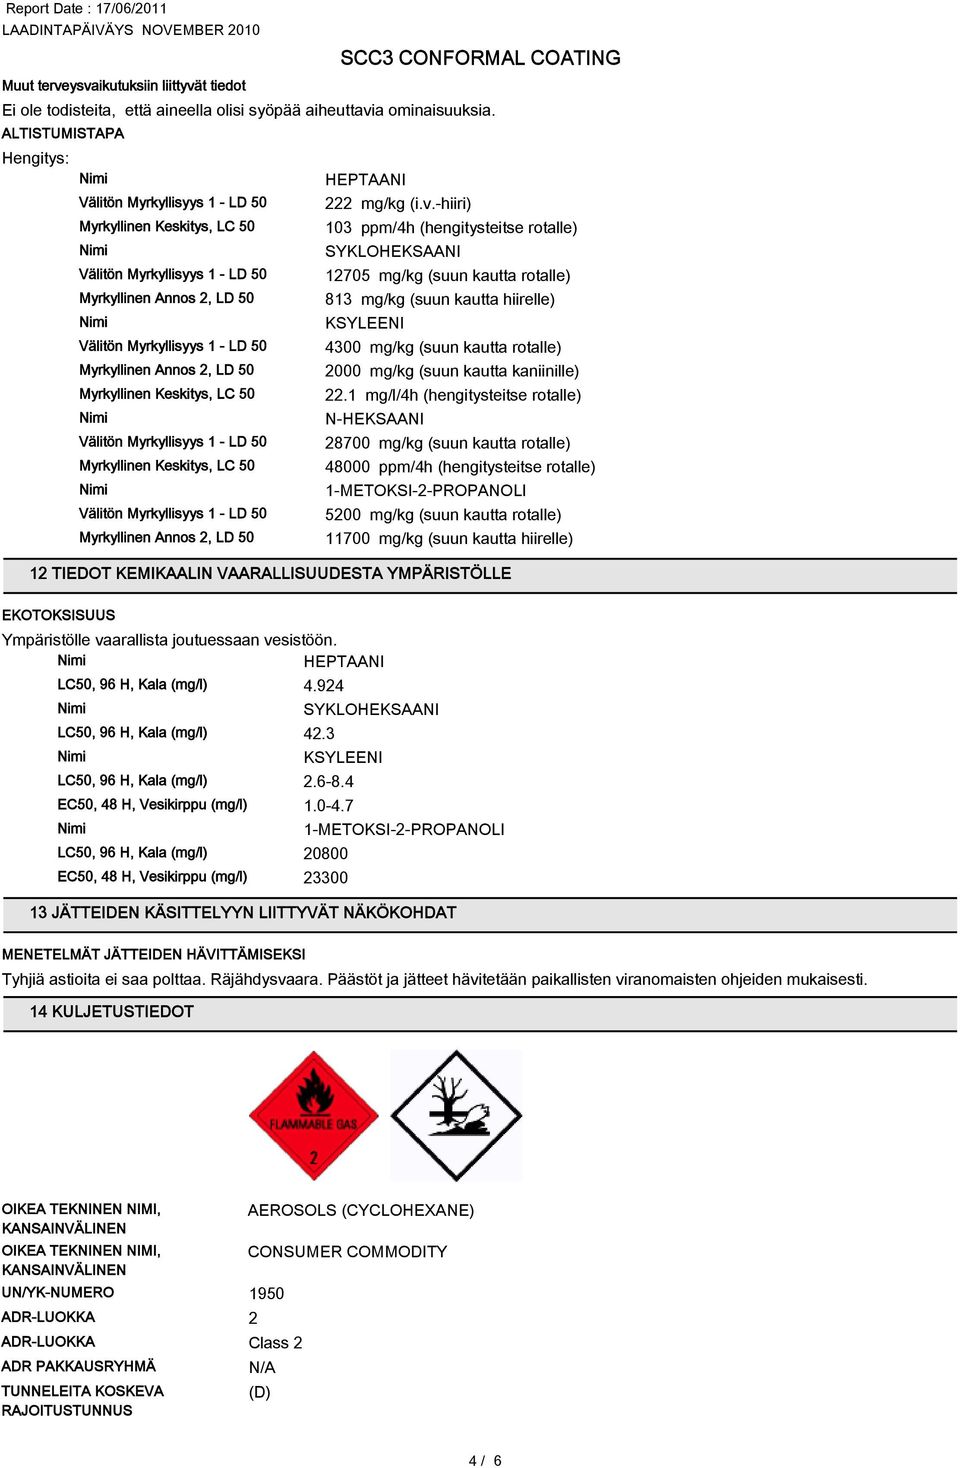 Keskitys, LC 50 103 ppm/4h (hengitysteitse rotalle) Välitön Myrkyllisyys 1 - LD 50 12705 mg/kg (suun kautta rotalle) Myrkyllinen Annos 2, LD 50 813 mg/kg (suun kautta hiirelle) Välitön Myrkyllisyys 1